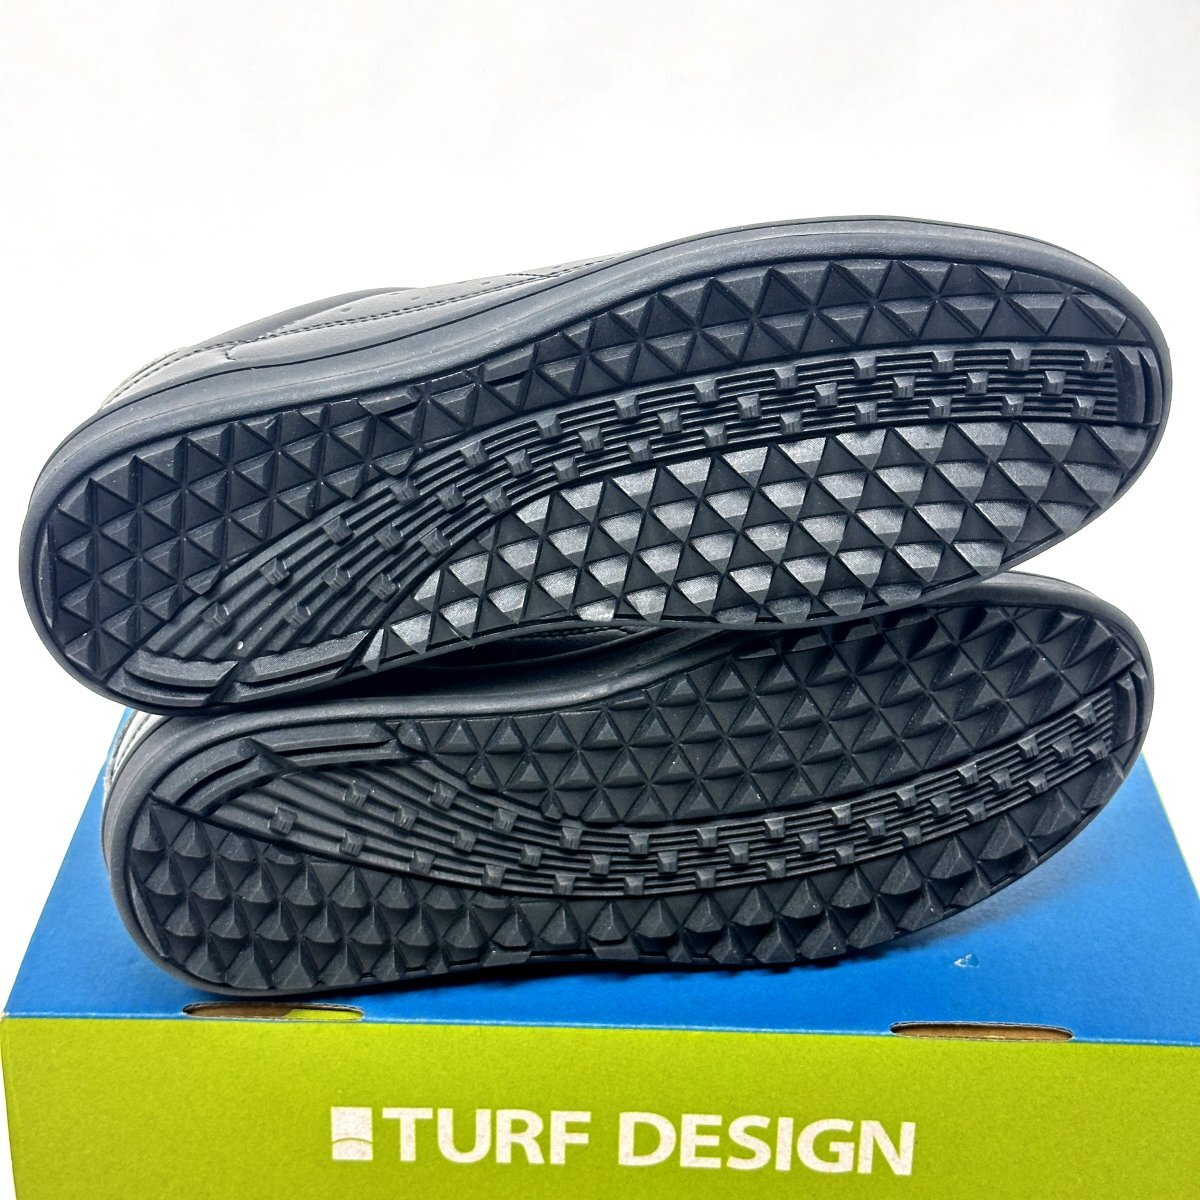 1 иен / не использовался товар *TURF DESIGN брезент дизайн туфли для гольфа шиповки отсутствует TDSH-2275 серый *